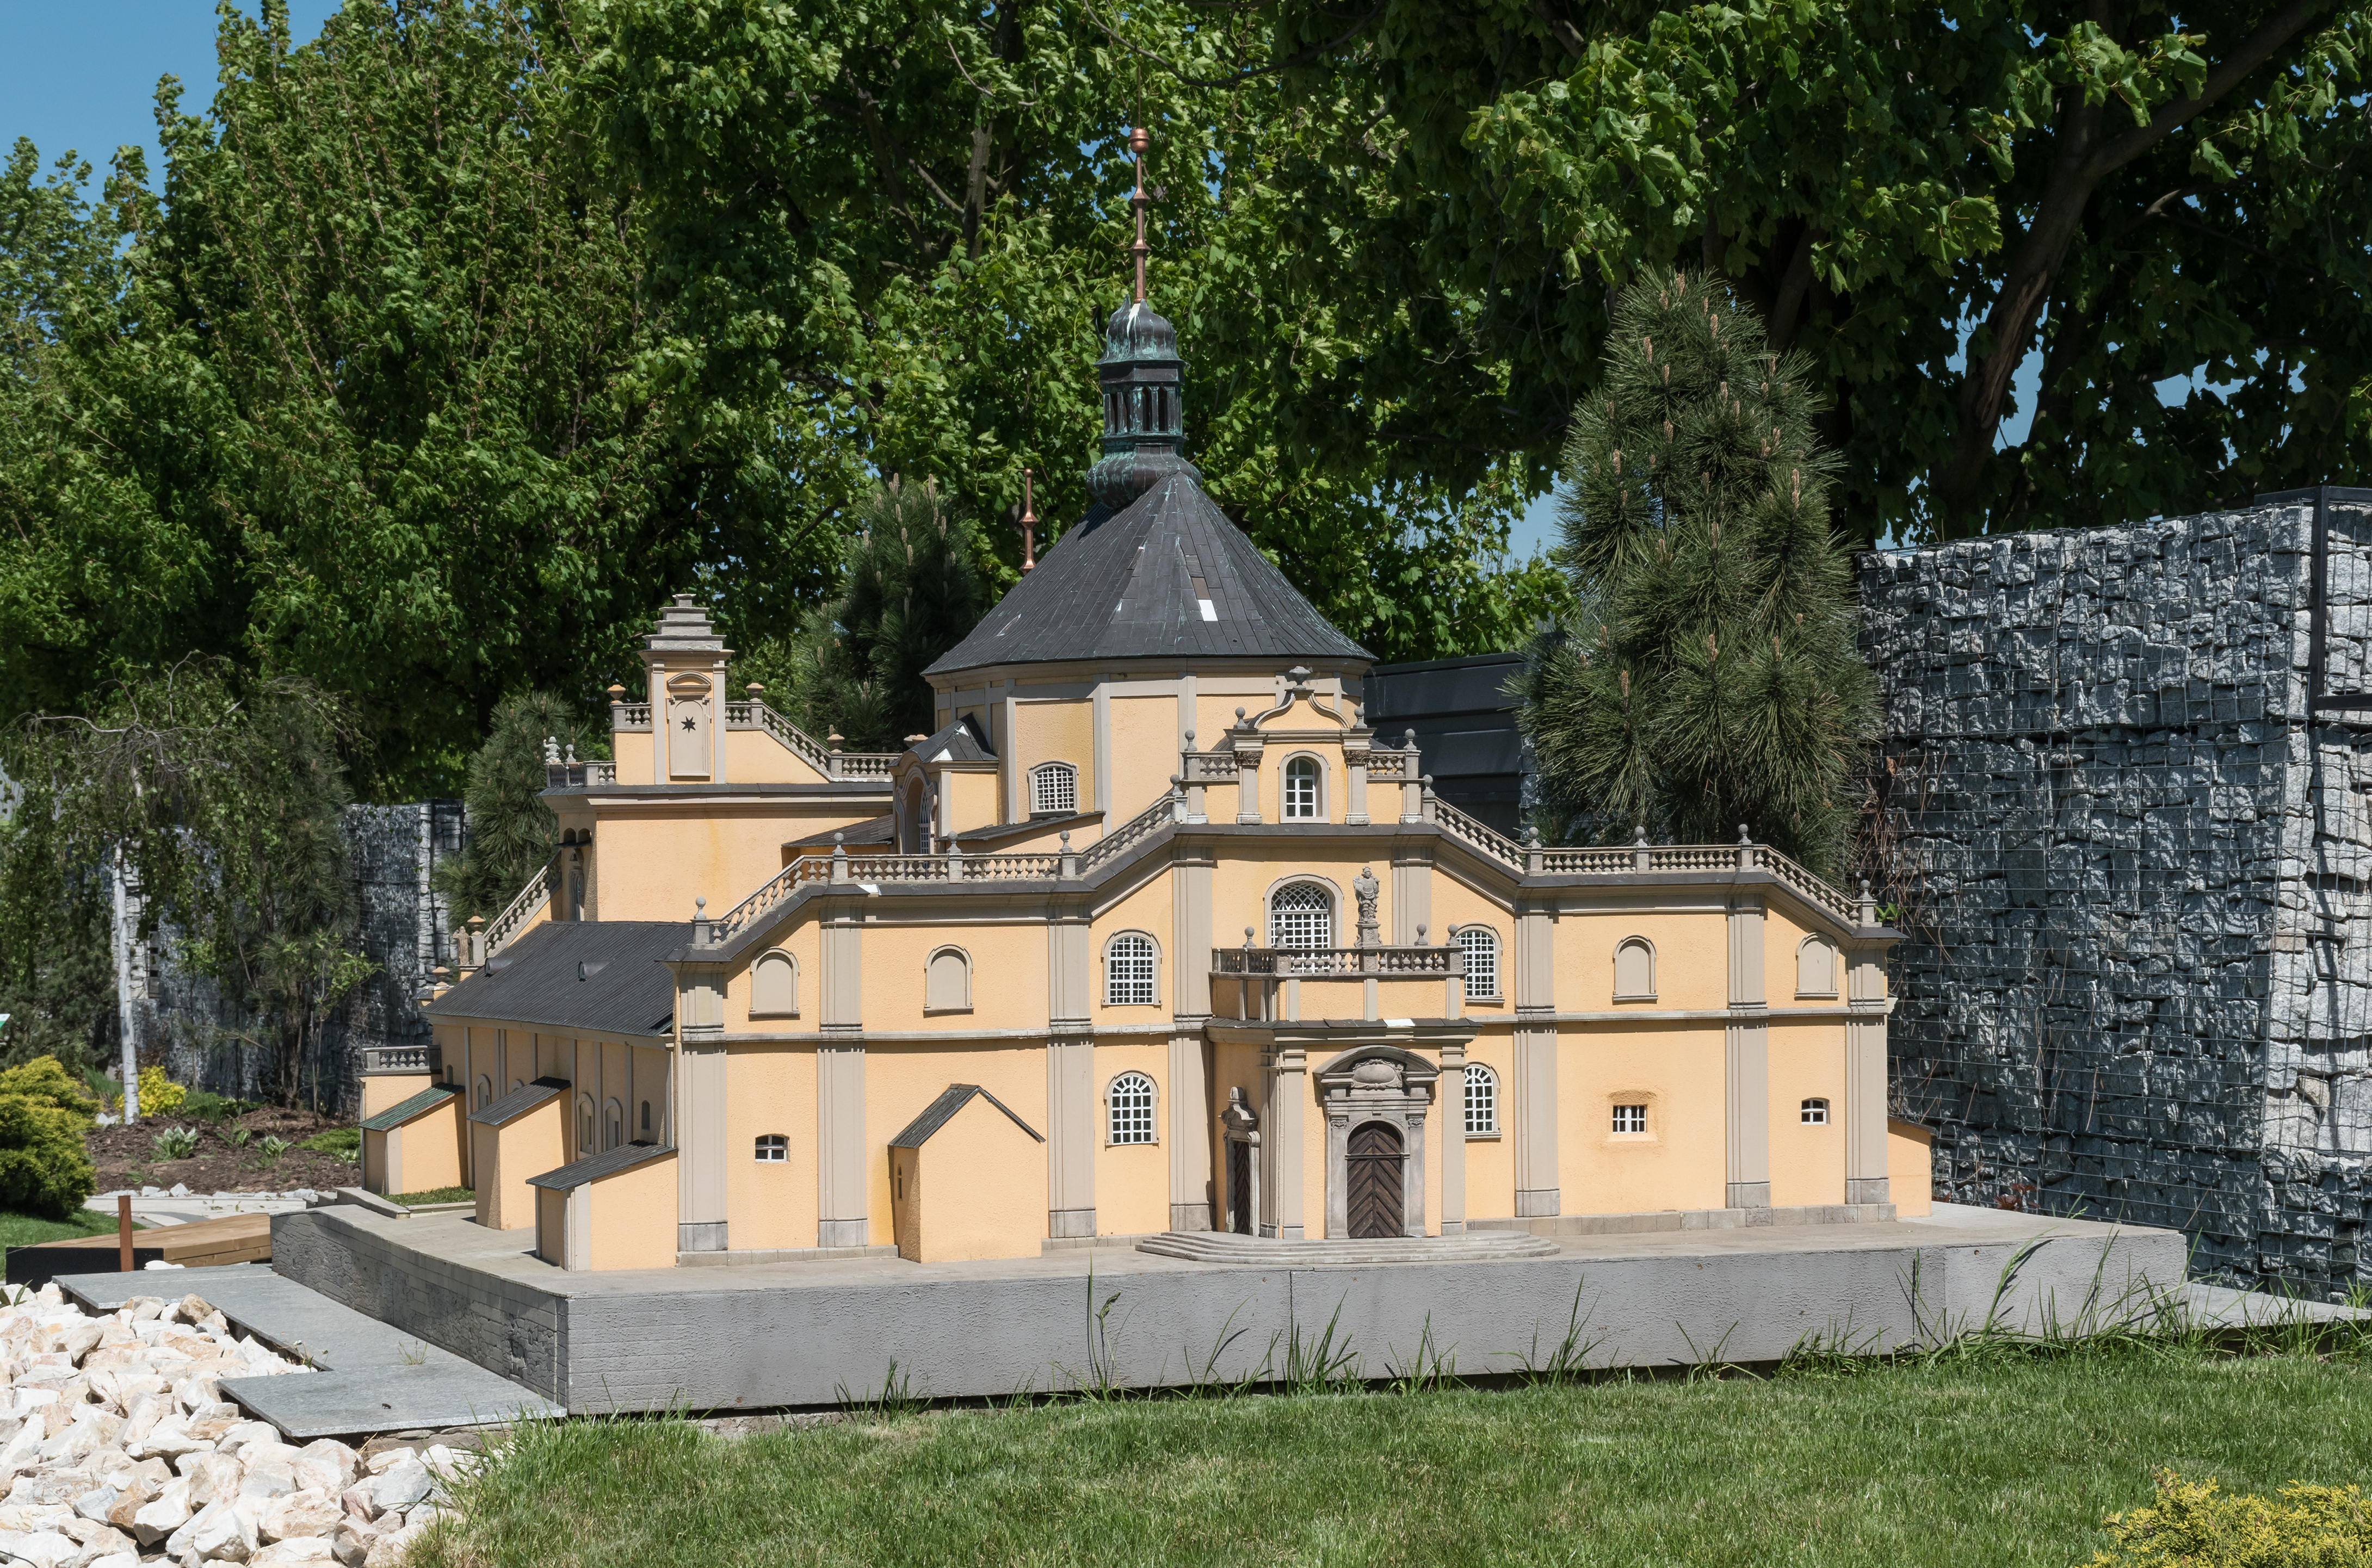 2017 Minieuroland w Kłodzku, kościół w Wambierzycach